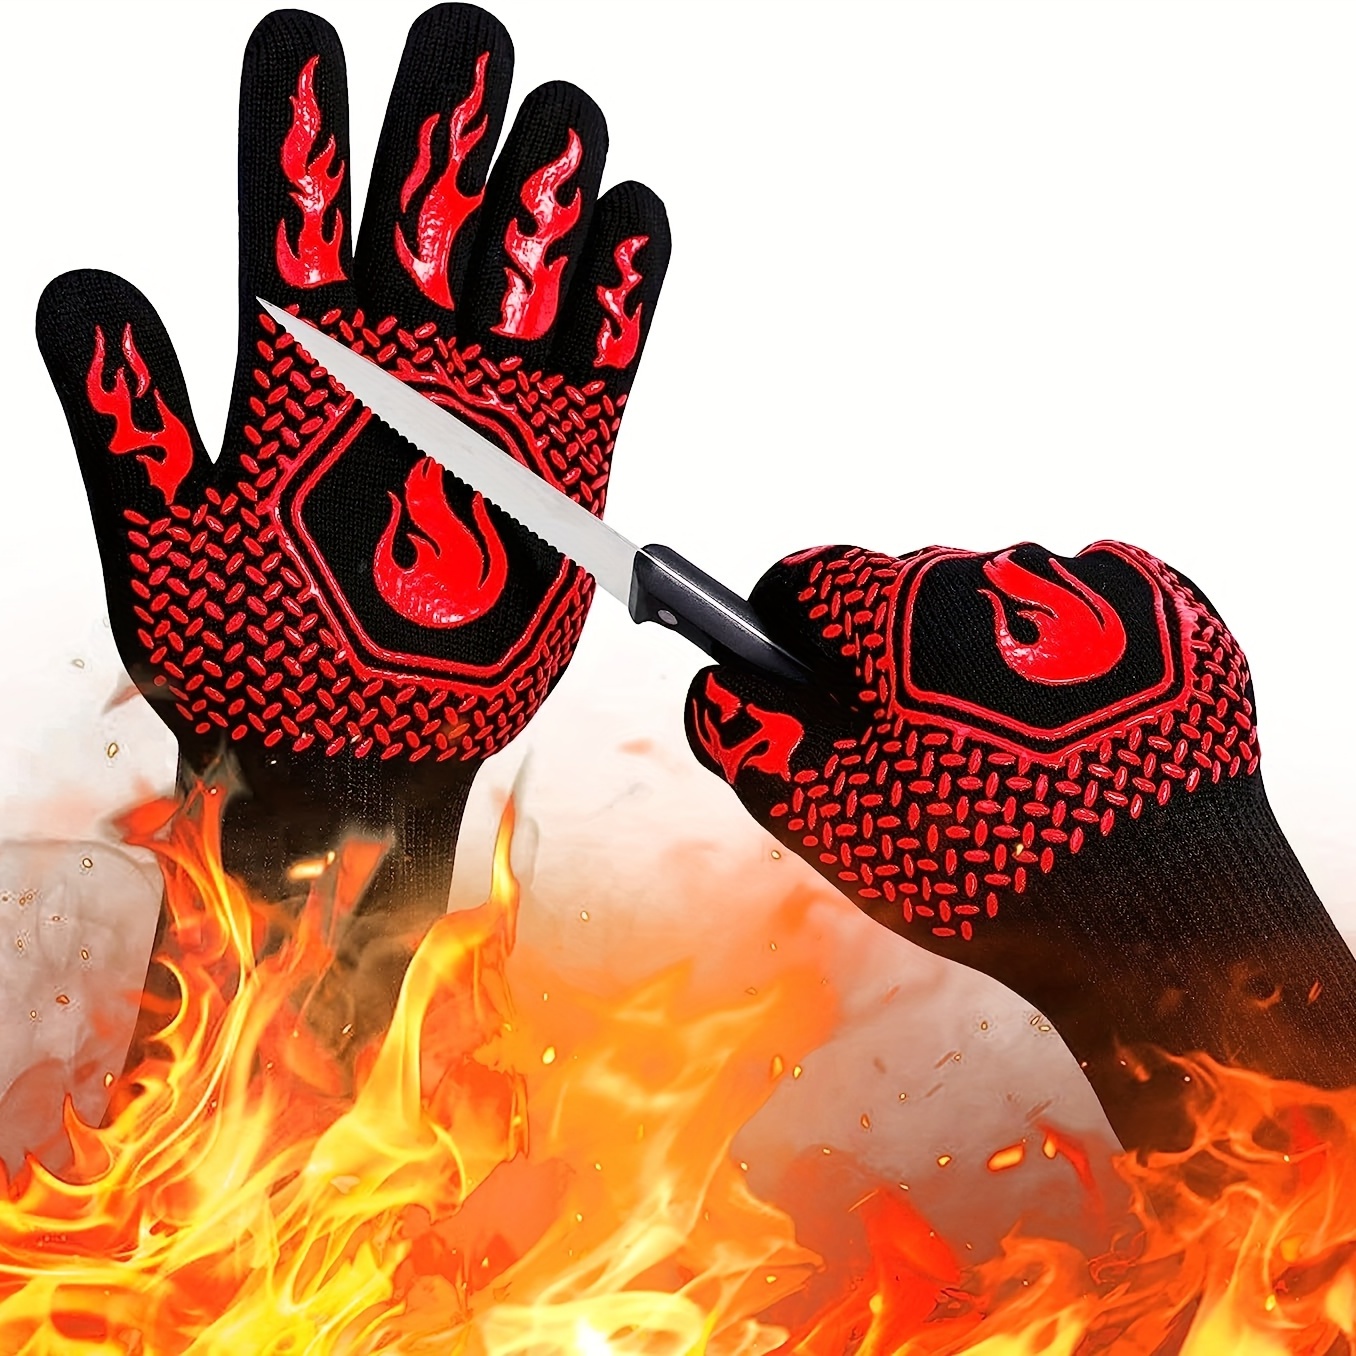 Guantes para barbacoa, guantes resistentes al calor de 1472 °F,guantes de  cocina para barbacoa, asar XianweiShao 8390615117418